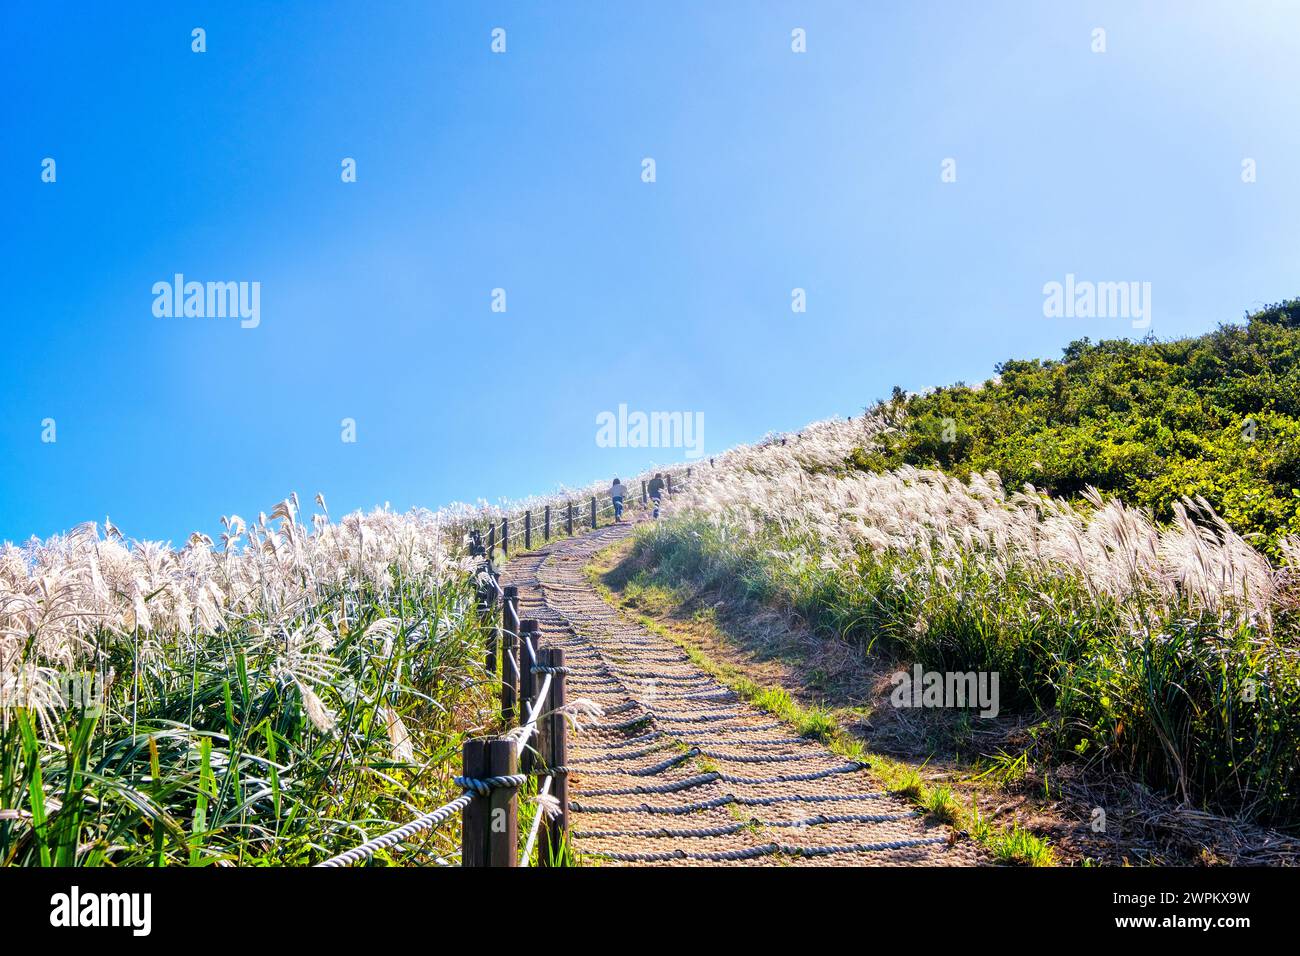 L'herbe argentée, une attraction touristique, poussant pendant l'automne sur le pic Saebyeol Oreum, île de Jeju, Corée du Sud, Asie Banque D'Images